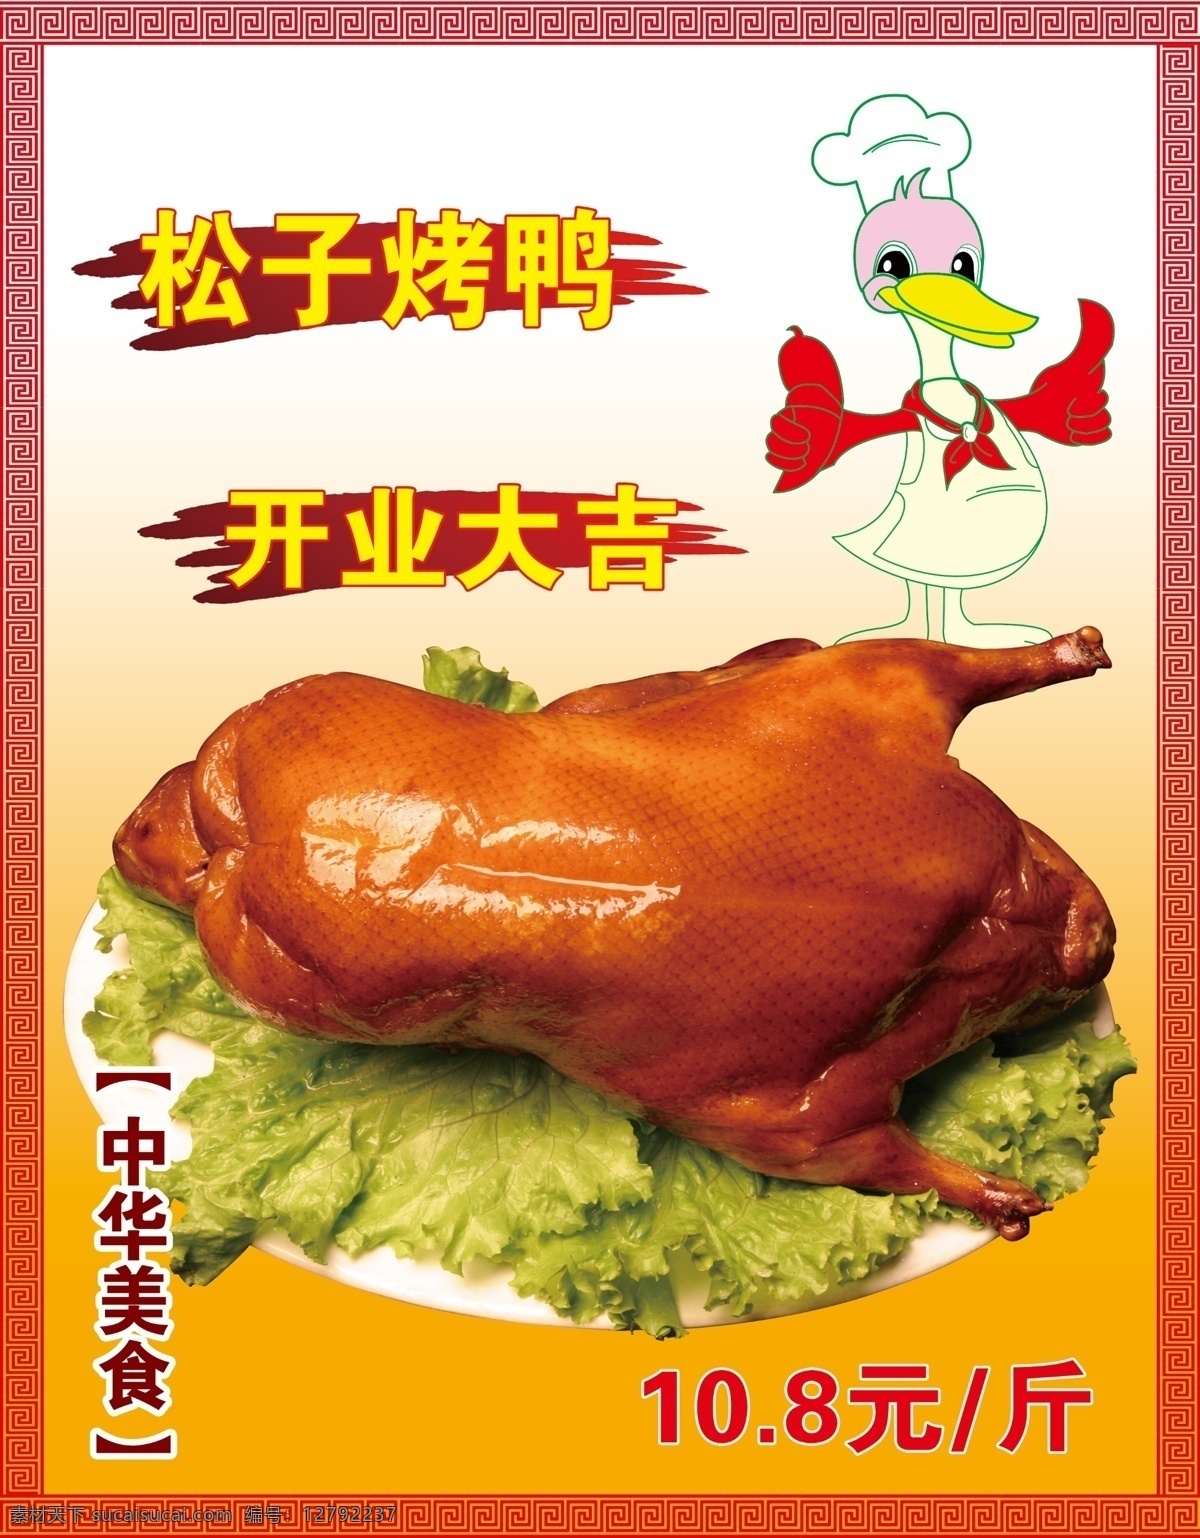 金牌烤鸭 烤鸭 老北京烤鸭 美味烤鸭 精品烤鸭 国内广告设计